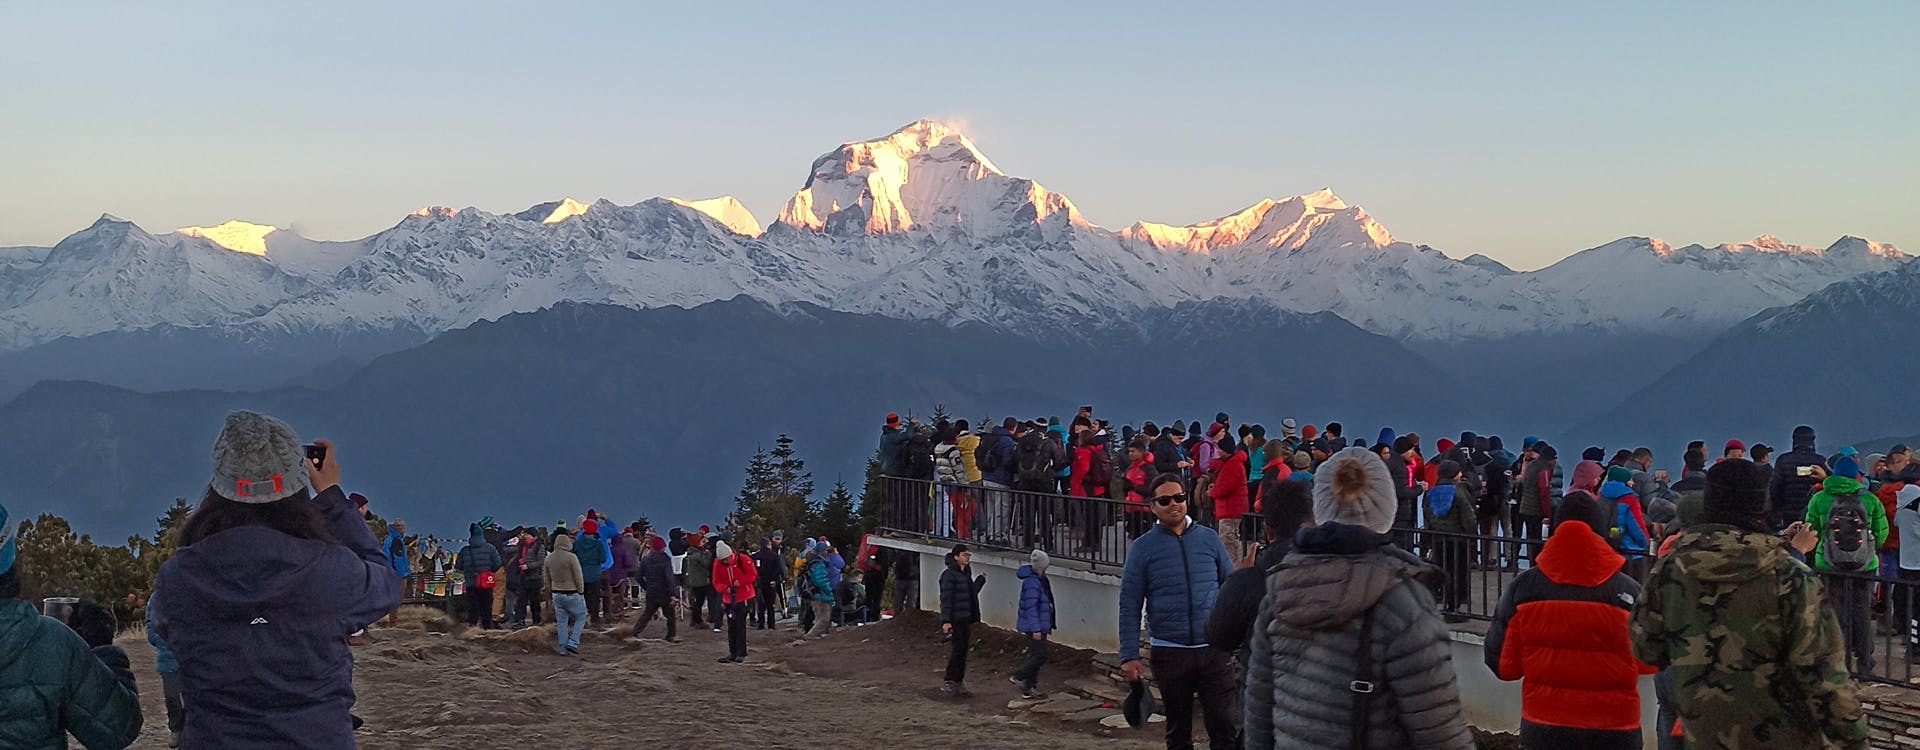 5 Best Hikes around Pokhara